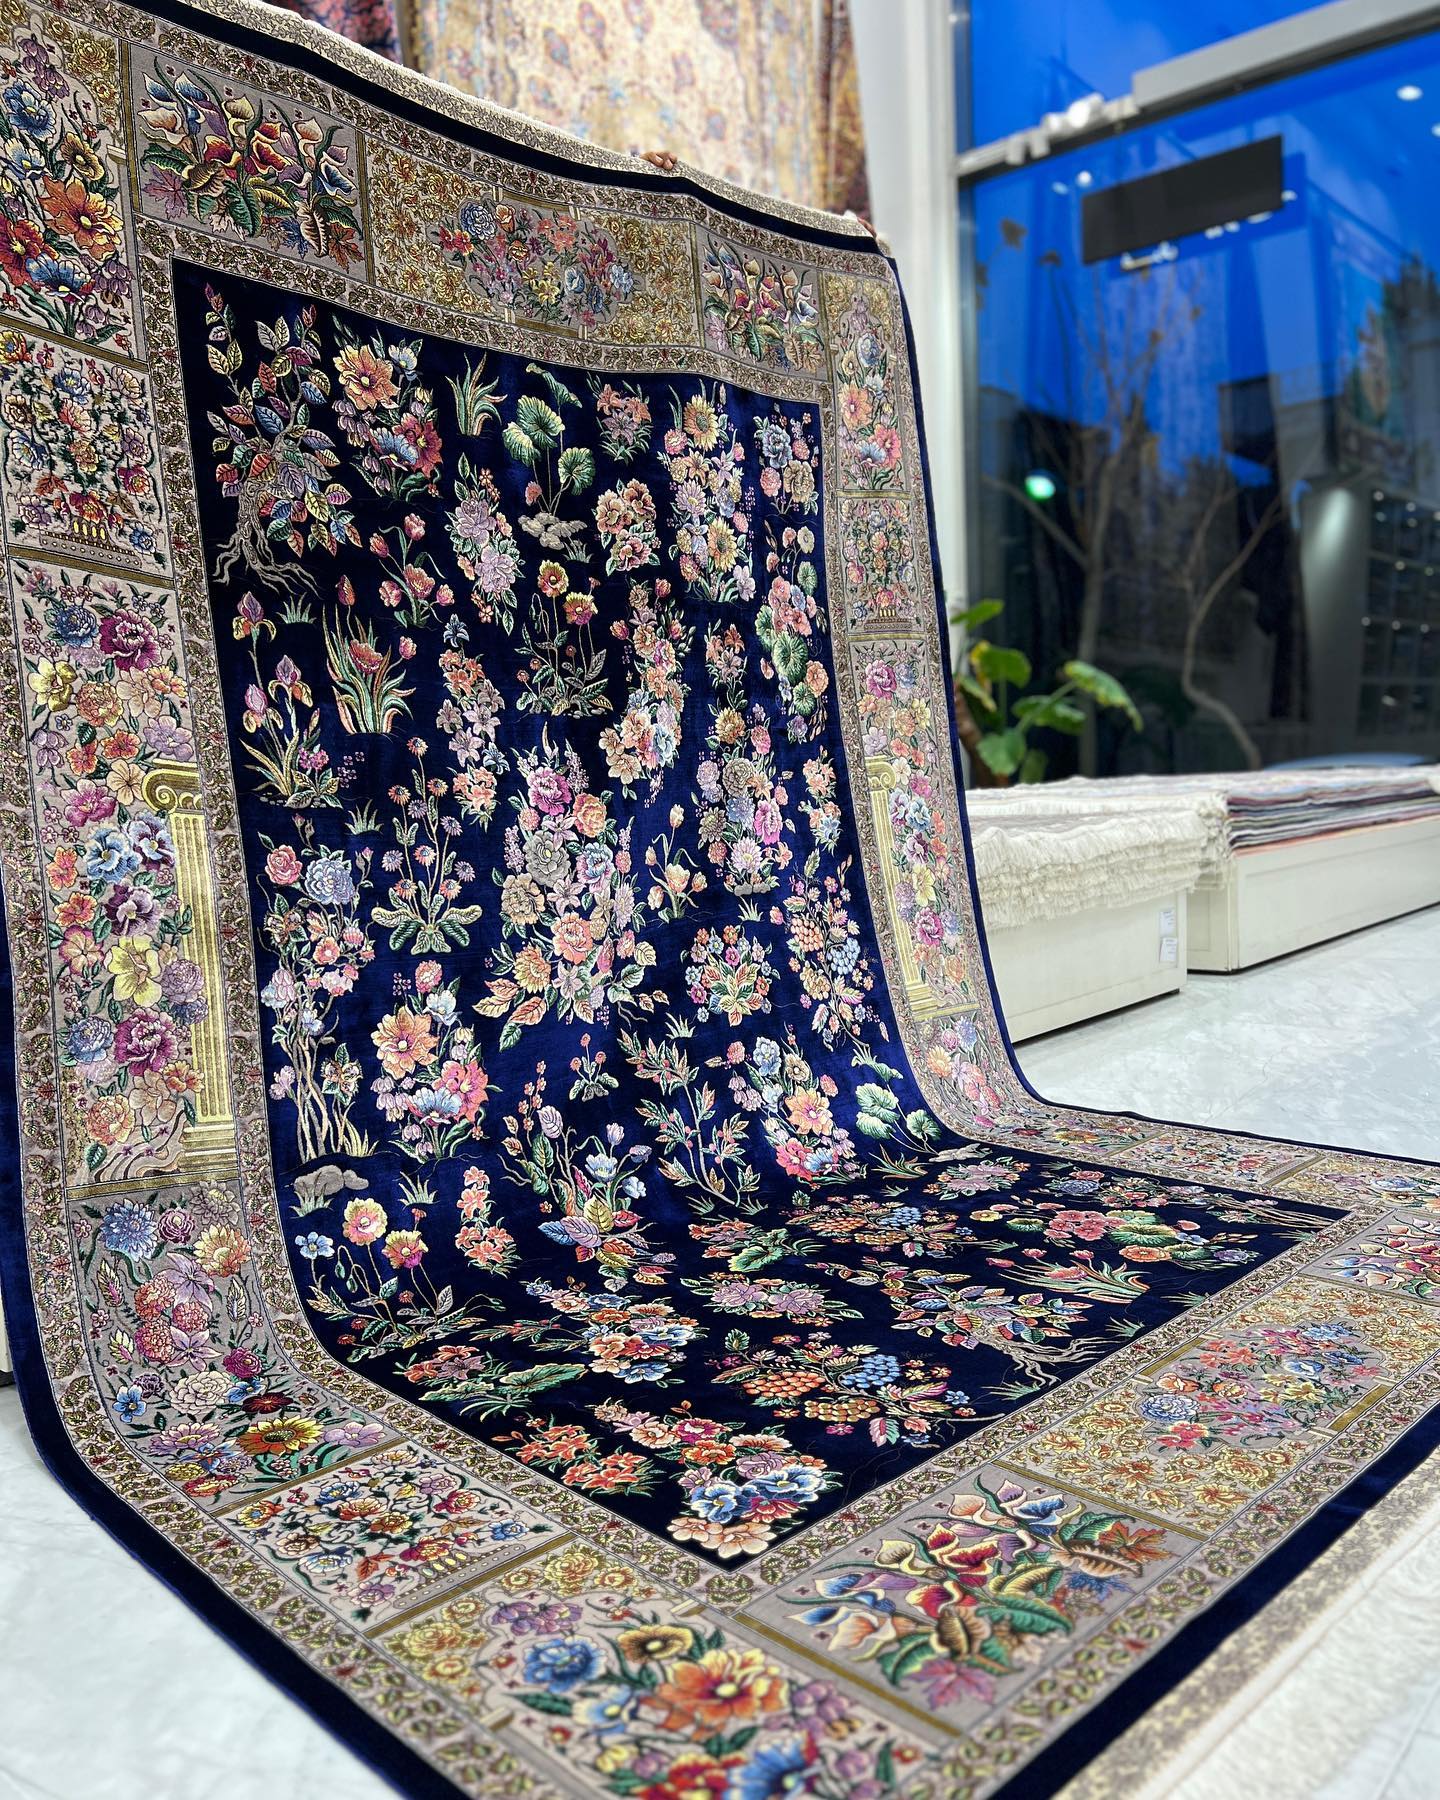 بهترین فرش فروشی در رفسنجان گالری فرش مصطوفی رفسنجان (1)